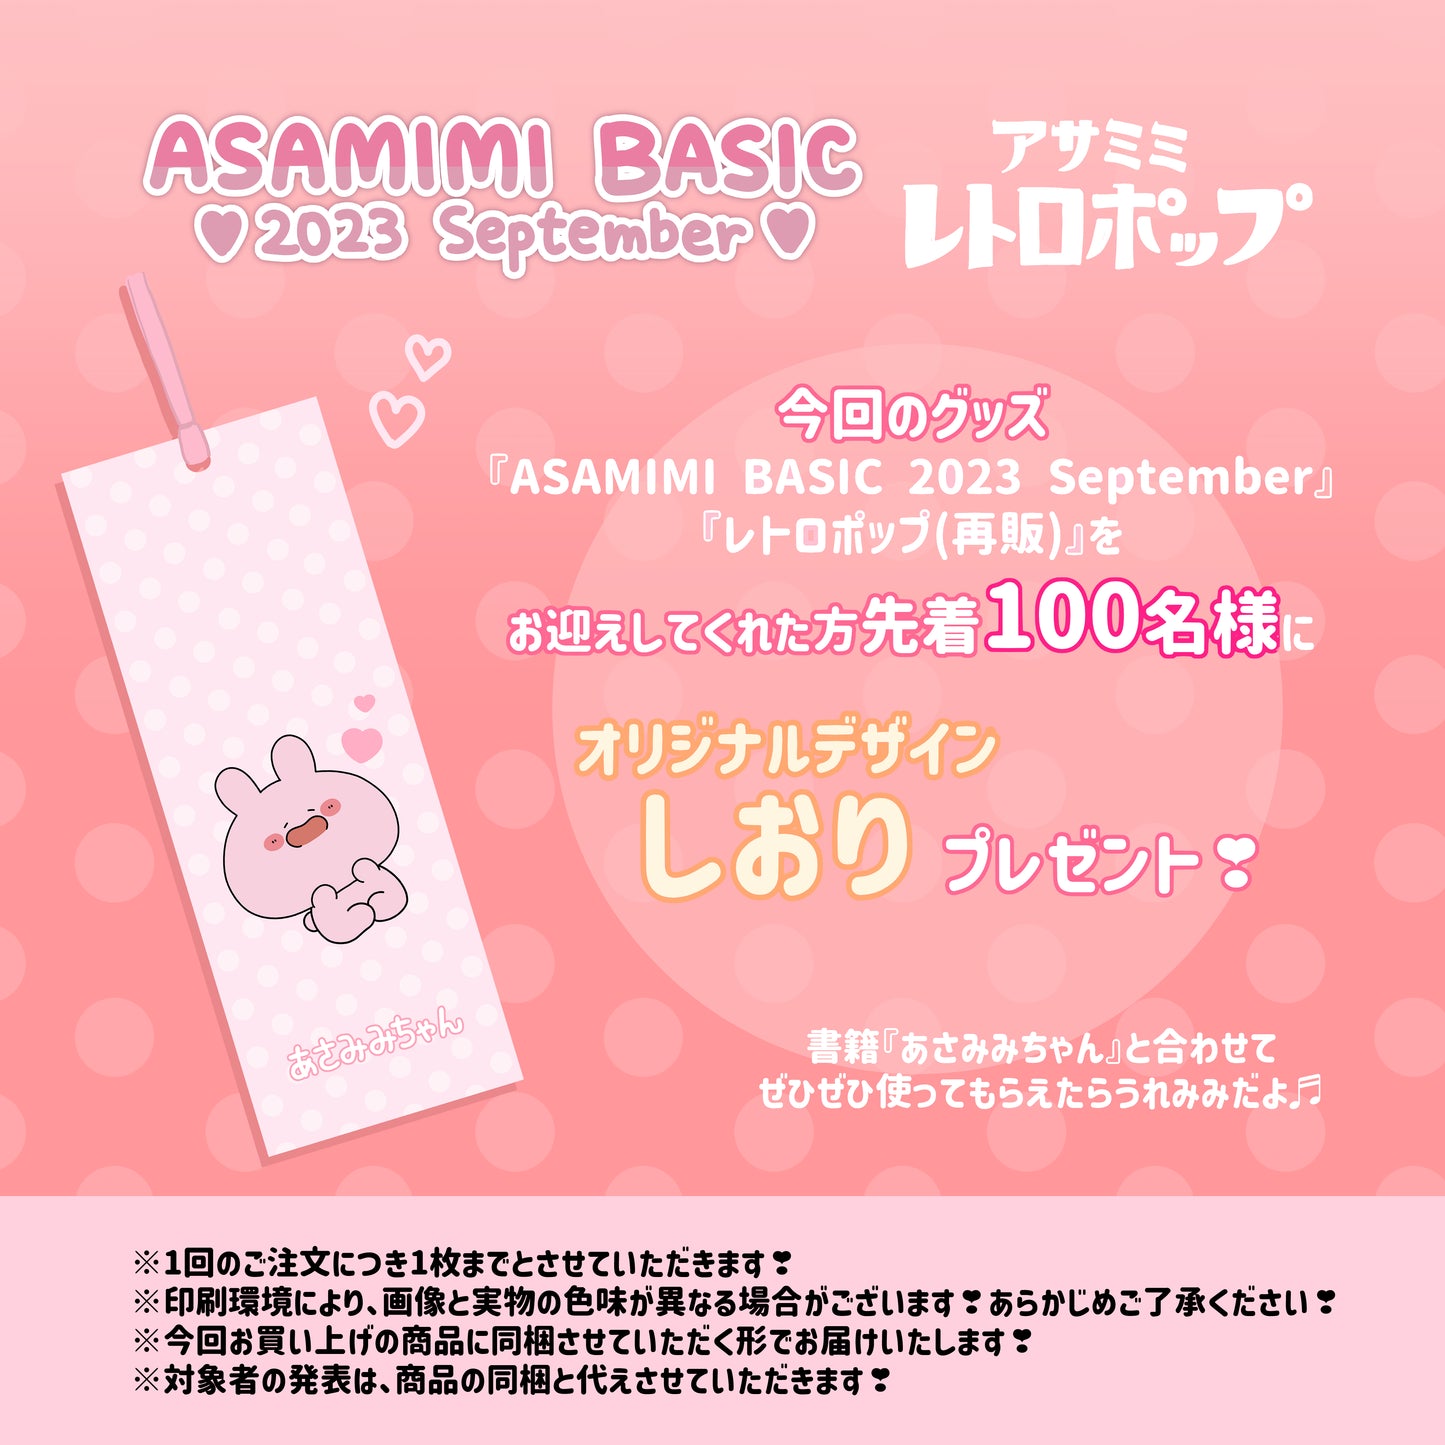 [Asamimi-chan] Gyutto Note and Memo Set (ASAMIMI BASIC 2023 September) [Shipped in mid-November]